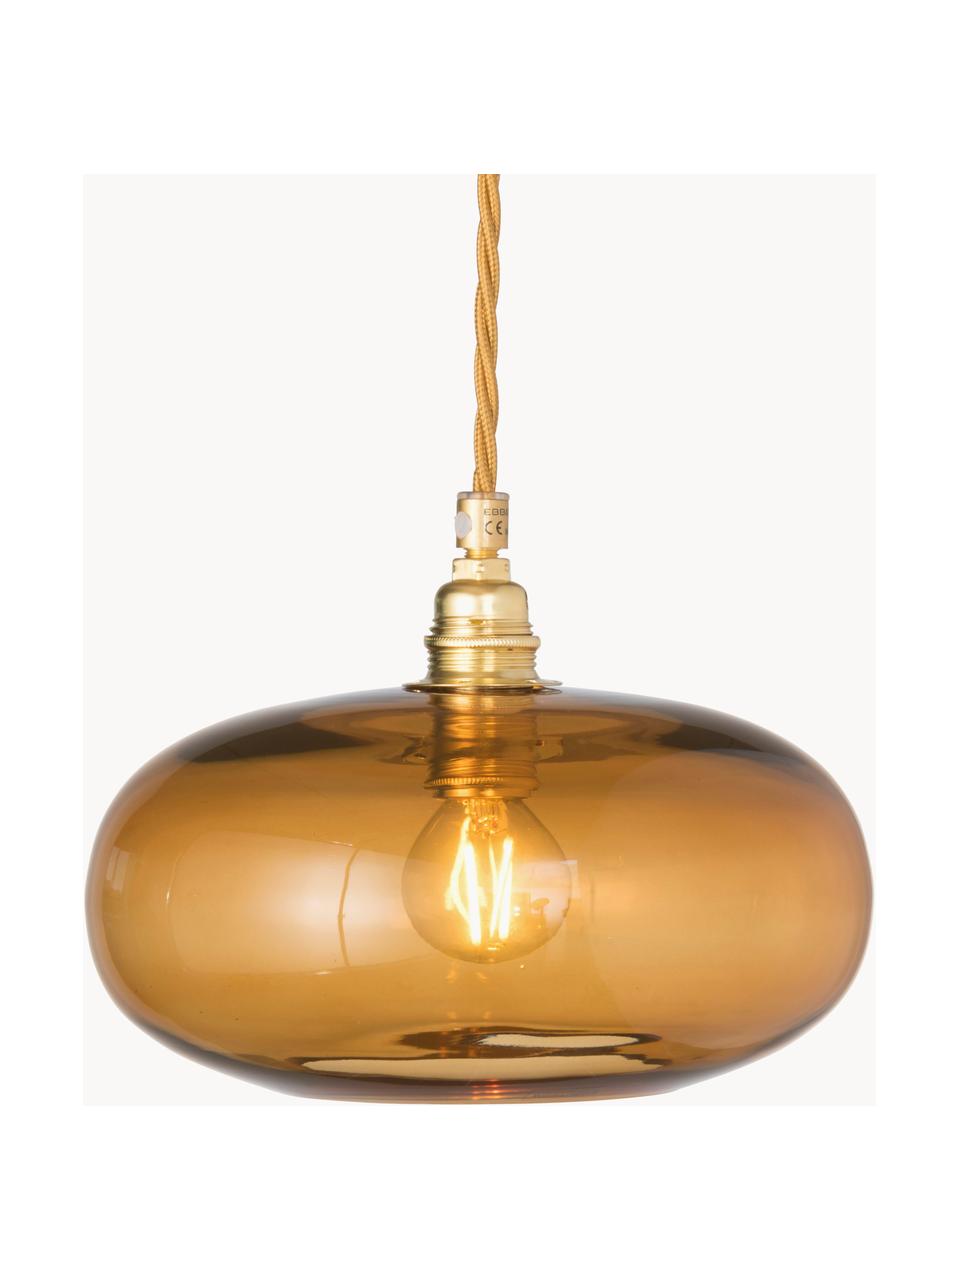 Lámpara de techo pequeña Horizon, Pantalla: vidrio tintado, Estructura: metal recubierto, Cable: cubierto en tela, Beige, dorado, Ø 21 x Al 14 cm